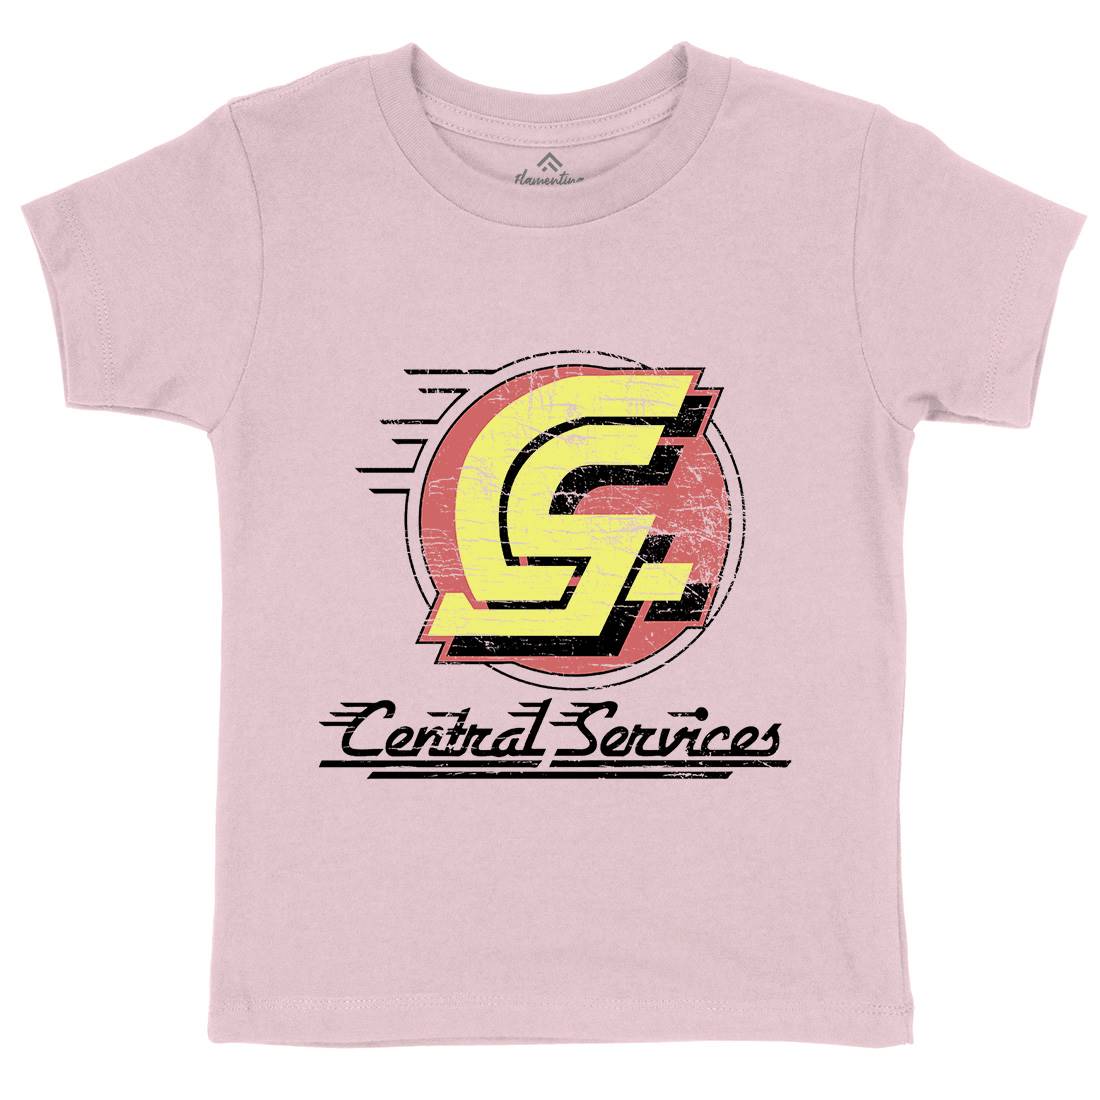 Central Services Kids Crew Neck T-Shirt Space D250